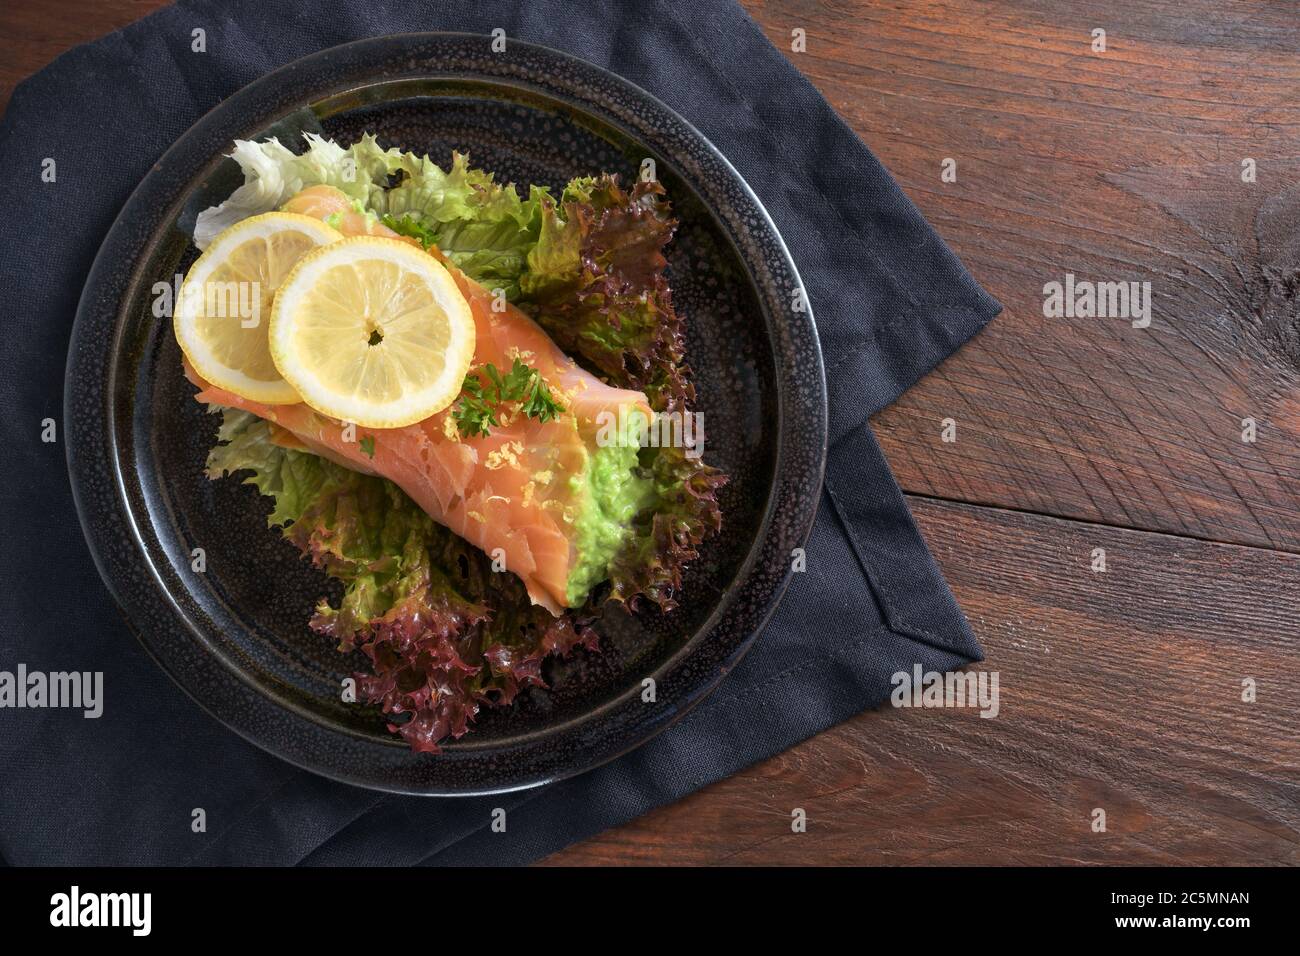 Kohlenhydratarme oder ketogene Ernährung, geräuchertes Lachsrollen gefüllt mit Erbsenpüree auf Salat mit Zitronenscheiben und Petersilie garnieren auf einem dunklen Teller und Serviette Stockfoto